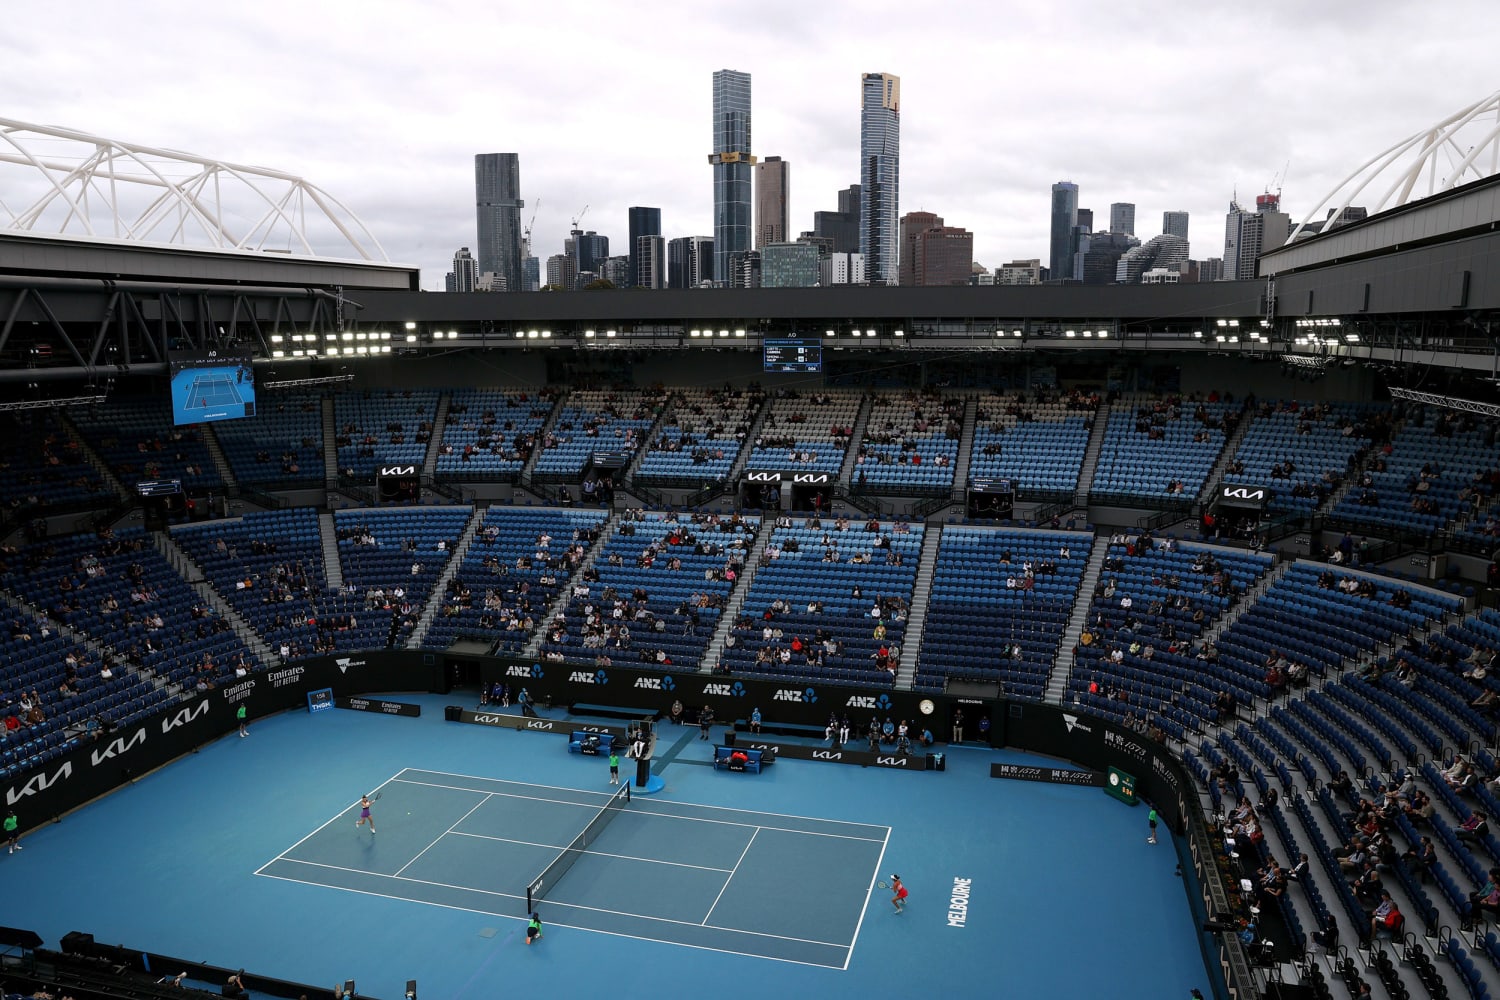 Опен диак. Стадион теннис Мельбурн. Австралия опен с высоты птичьего. Австралия Сидней стадион крыша открывается. Мельбурн Австралия вечер австралиан опен.